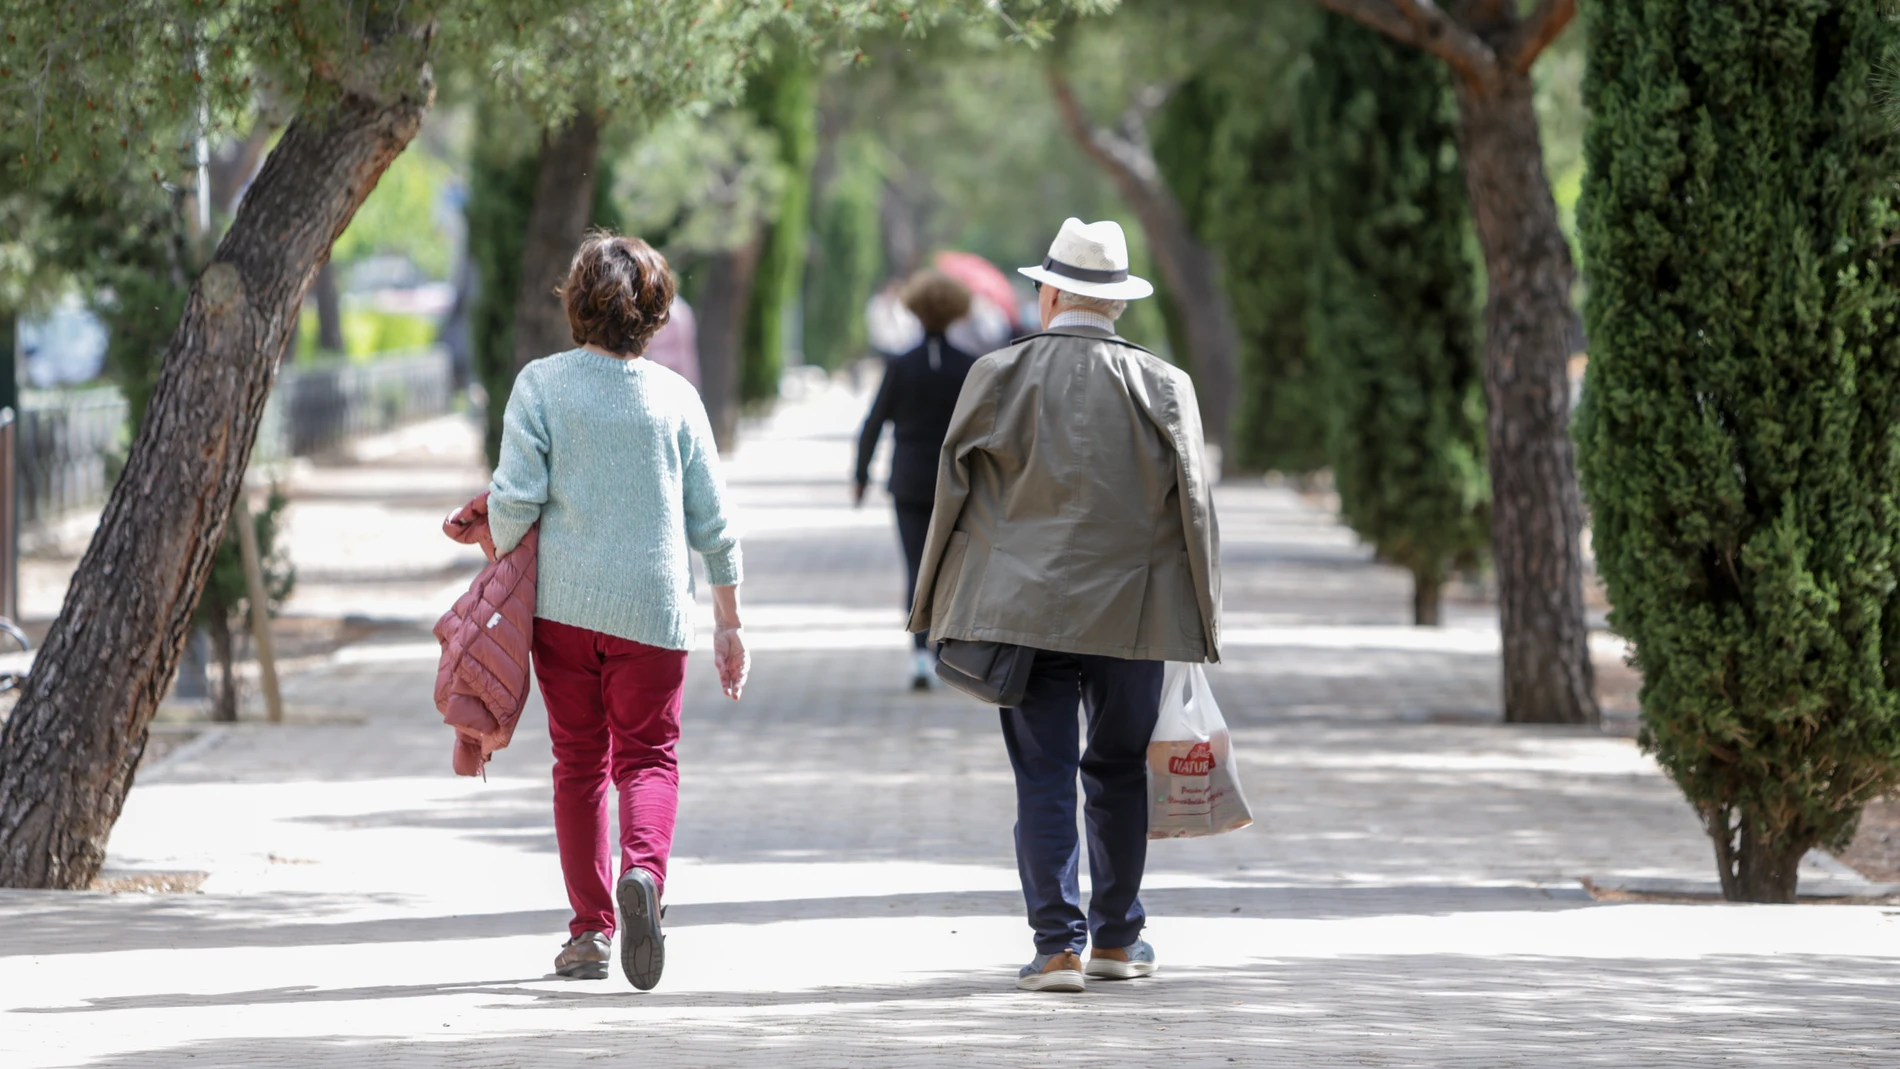 El paseo debería ser una de las actividades imprescindibles en la vida de cualquier persona mayor